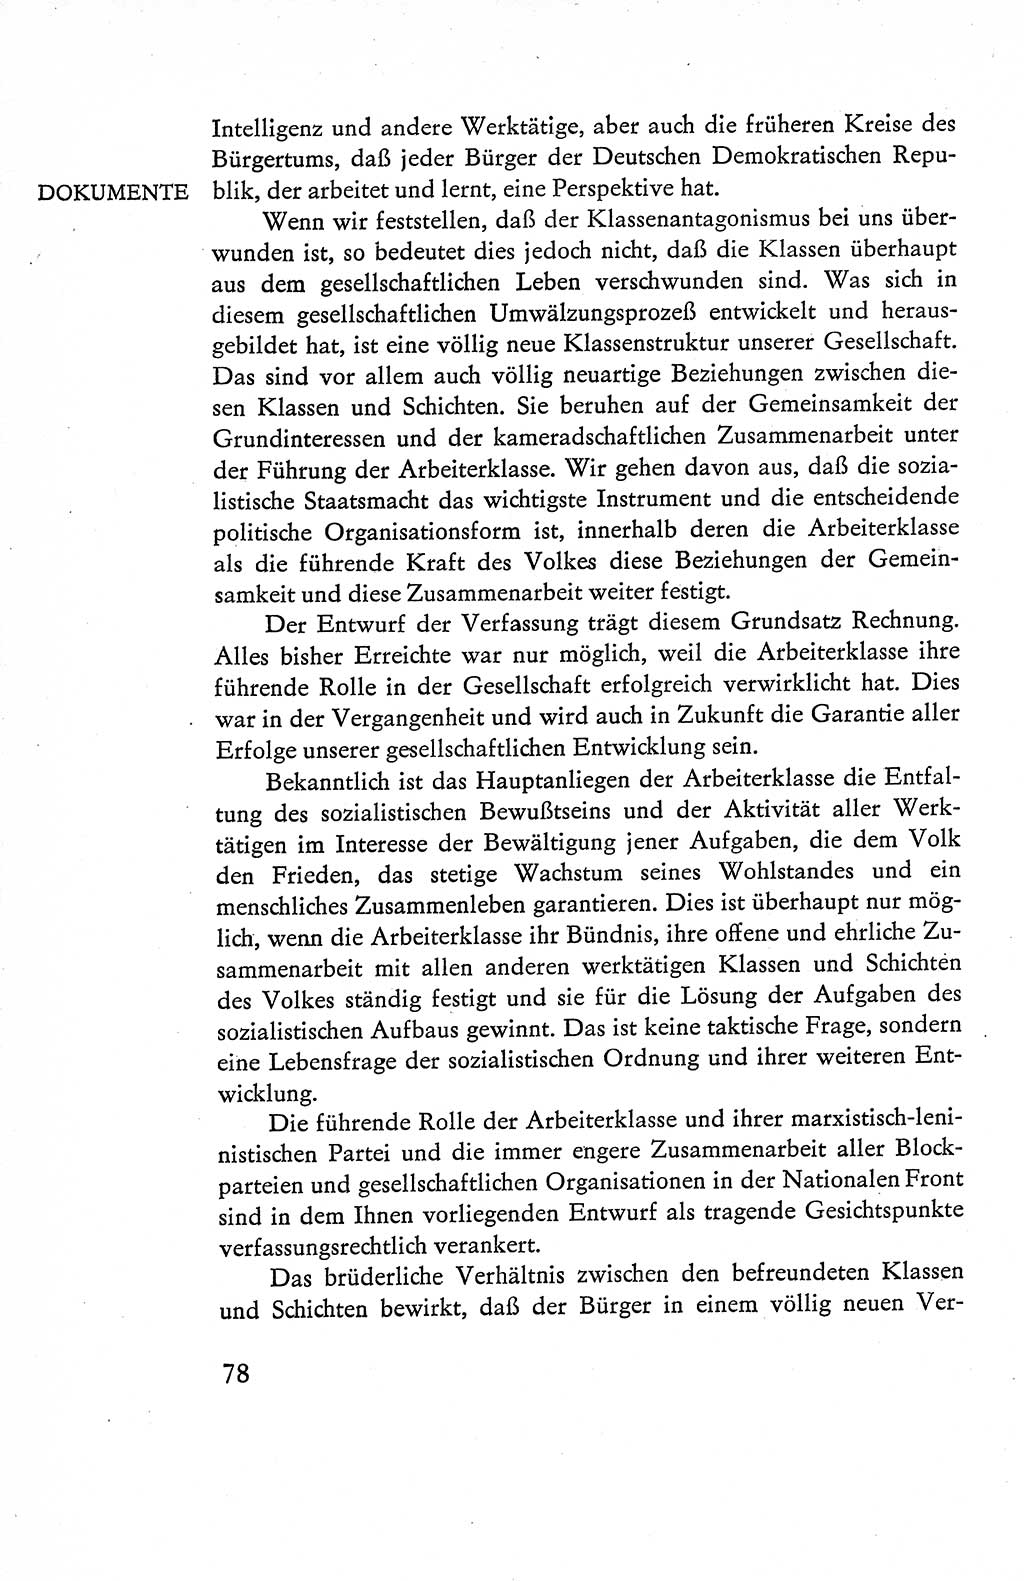 Verfassung der Deutschen Demokratischen Republik (DDR), Dokumente, Kommentar 1969, Band 1, Seite 78 (Verf. DDR Dok. Komm. 1969, Bd. 1, S. 78)